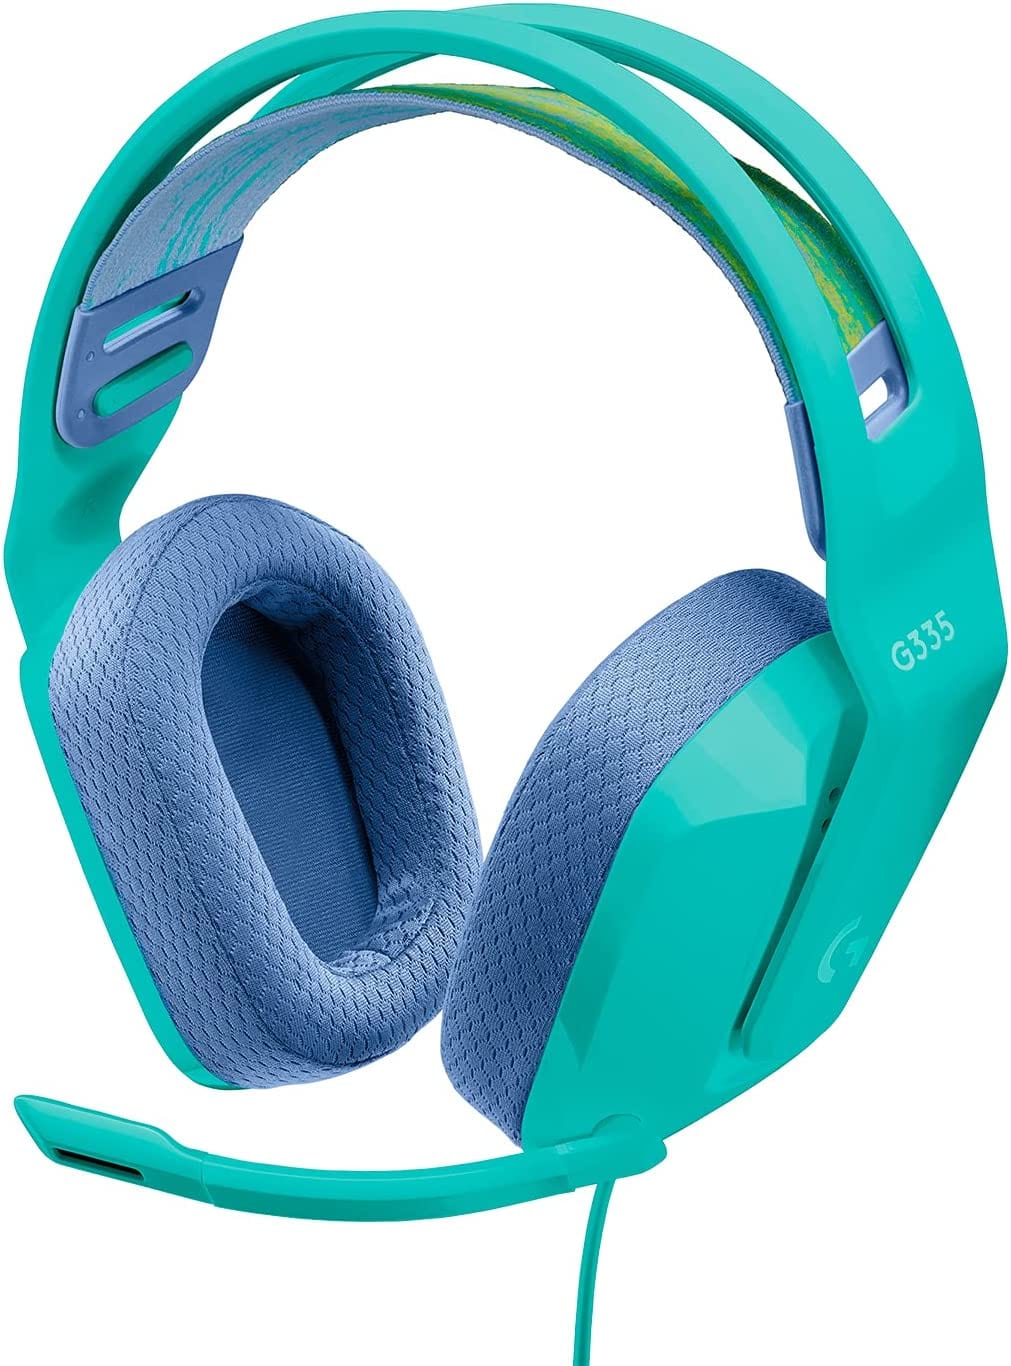 Logitech G535 LIGHTSPEED Wireless, Gaming On-Ear Headset - Smart Tech Shopping